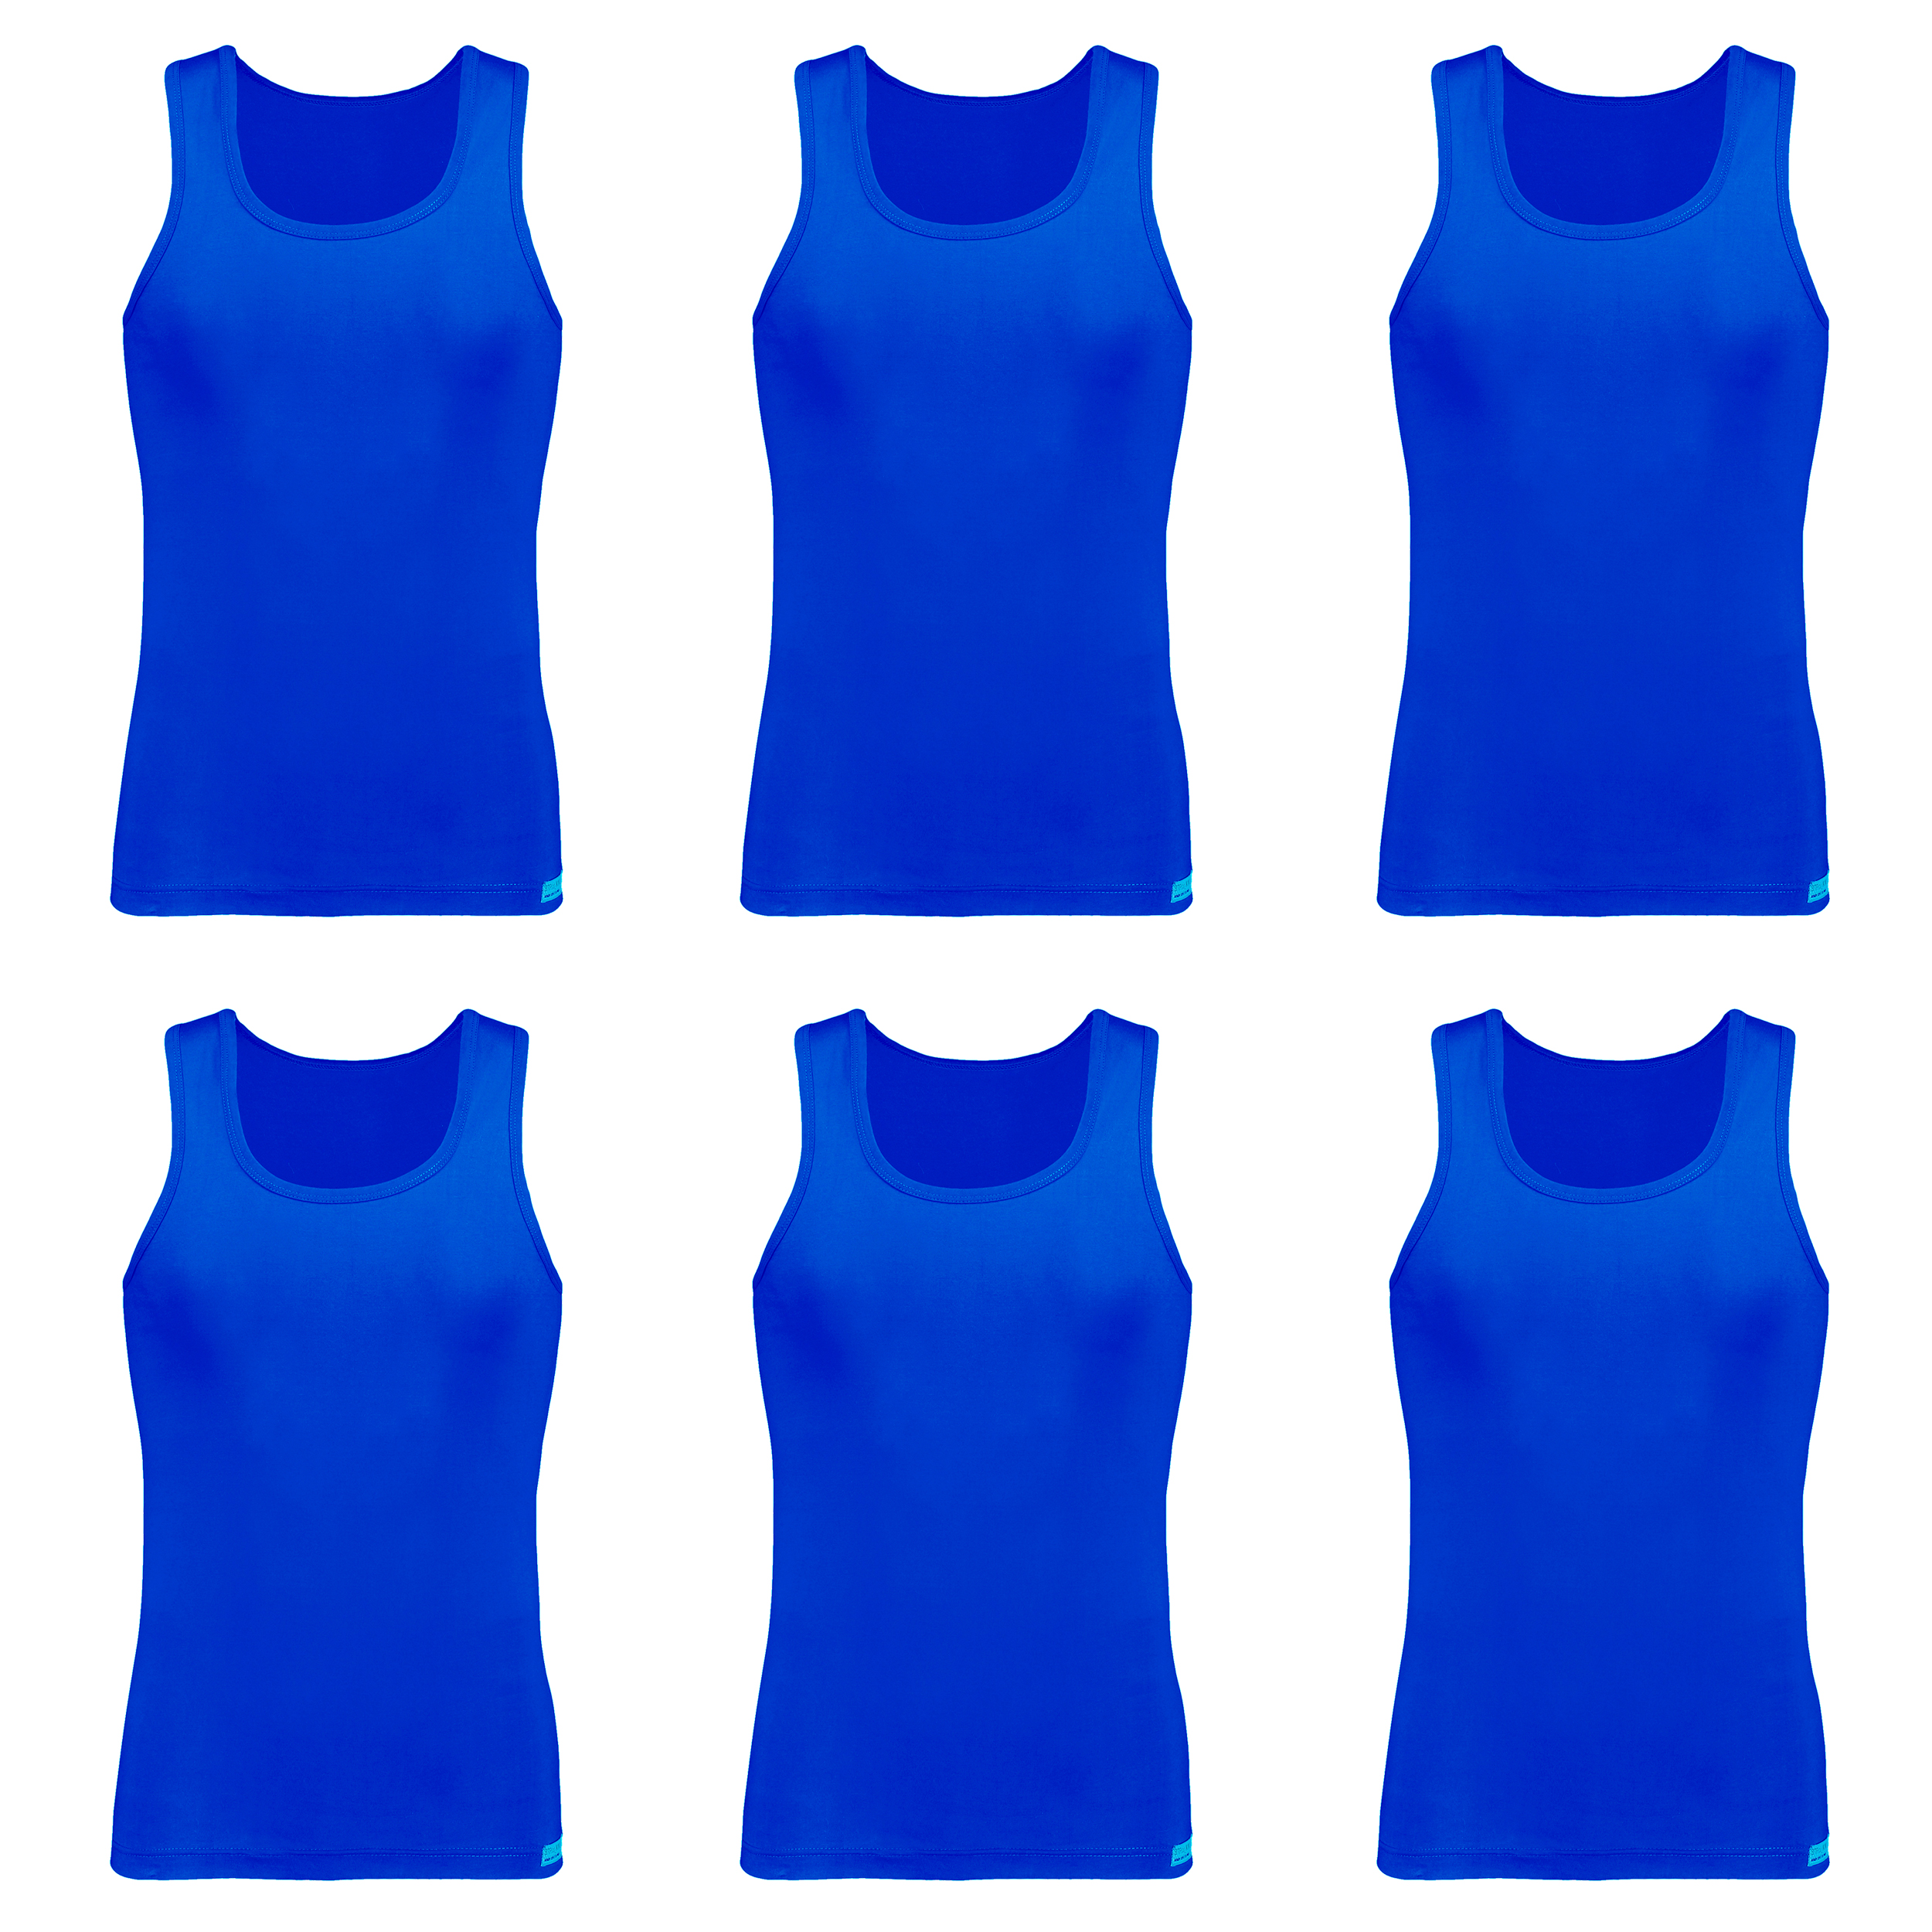 زیرپوش رکابی مردانه برهان تن پوش مدل 14-01 رنگ آبی بسته 6 عددی